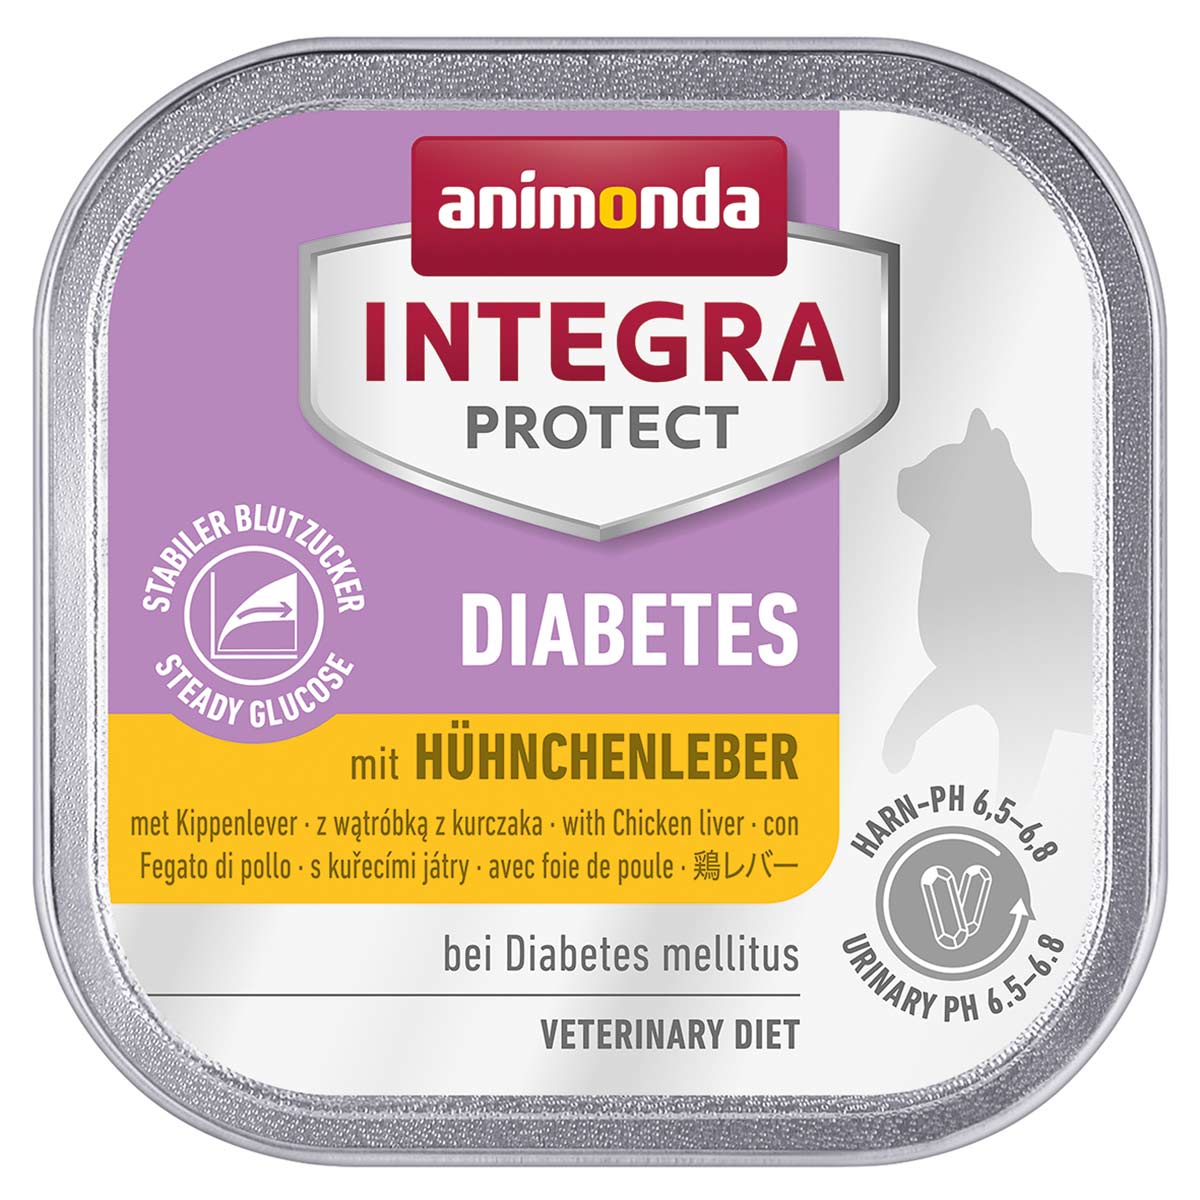 Animonda Integra Protect Diabetes kuřecí játra